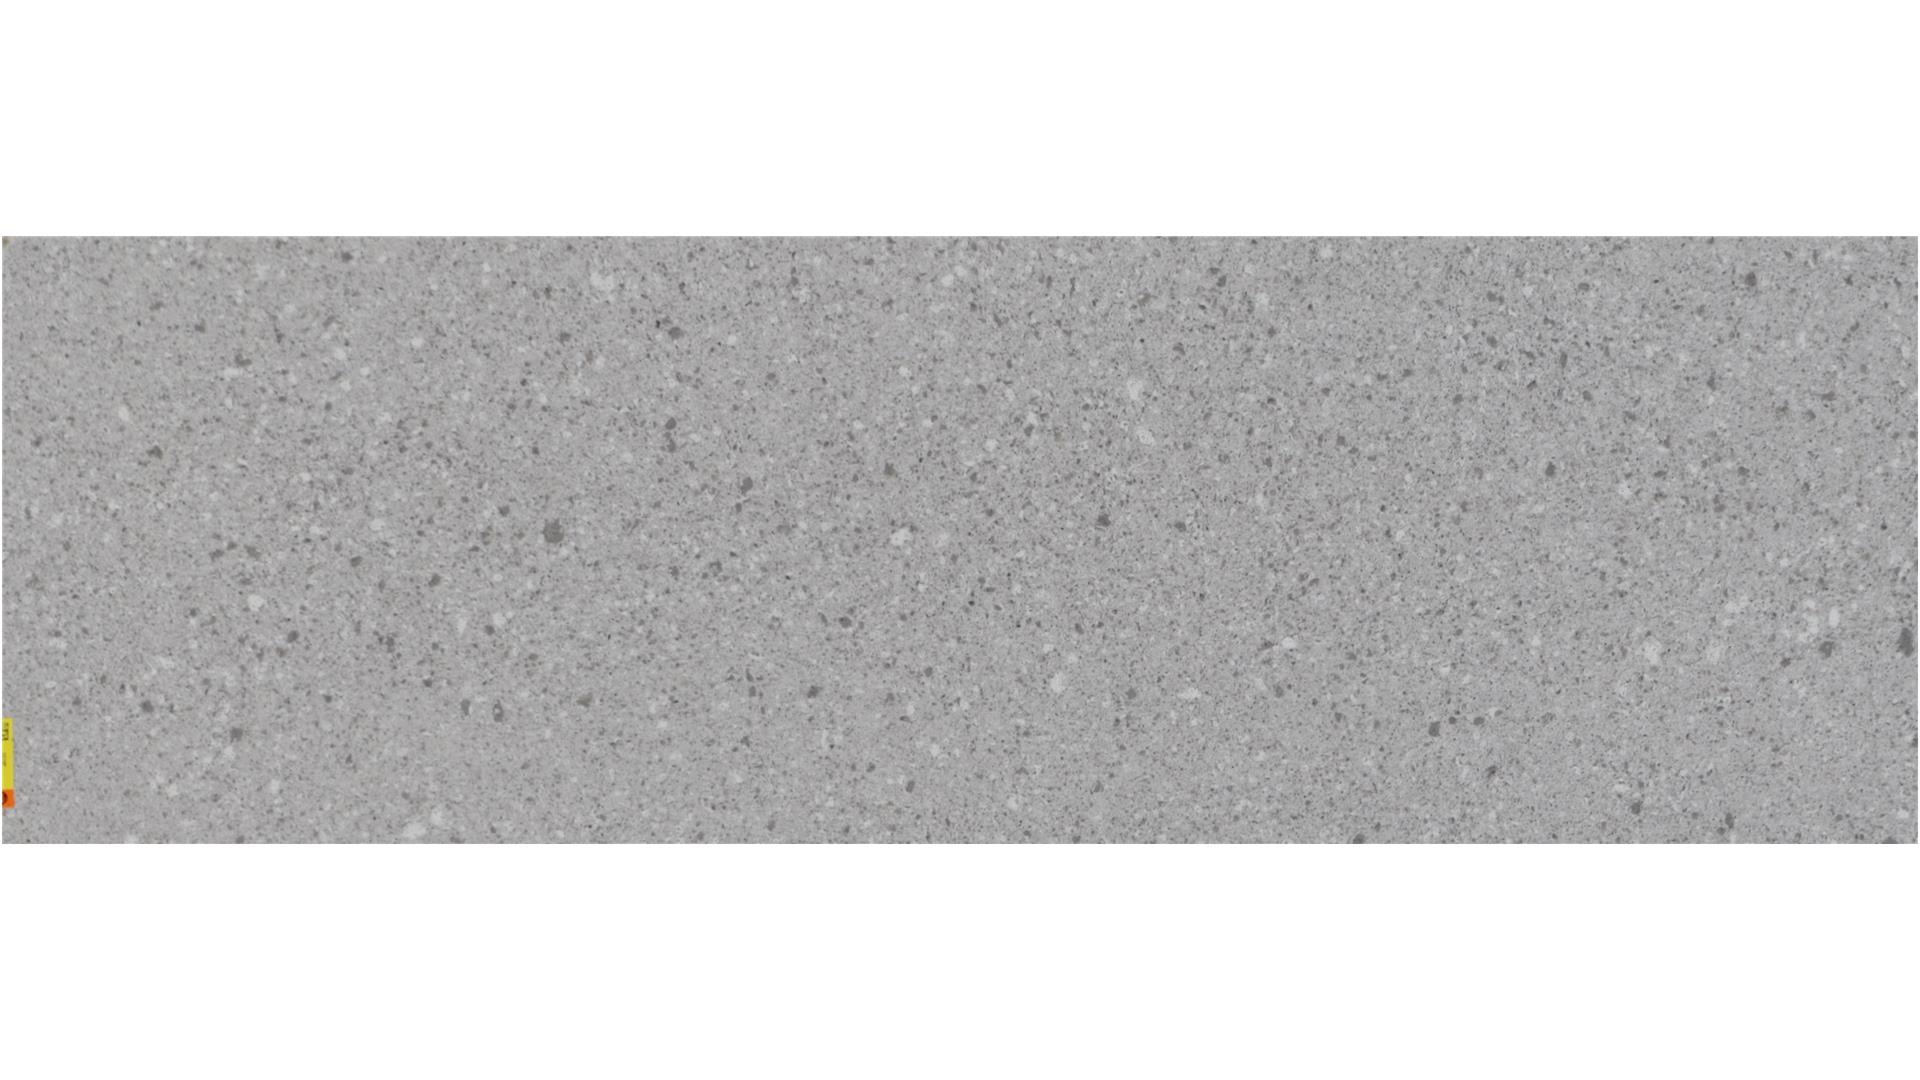 Atlantic Salt 6270 (S) Caesarstone Slabs